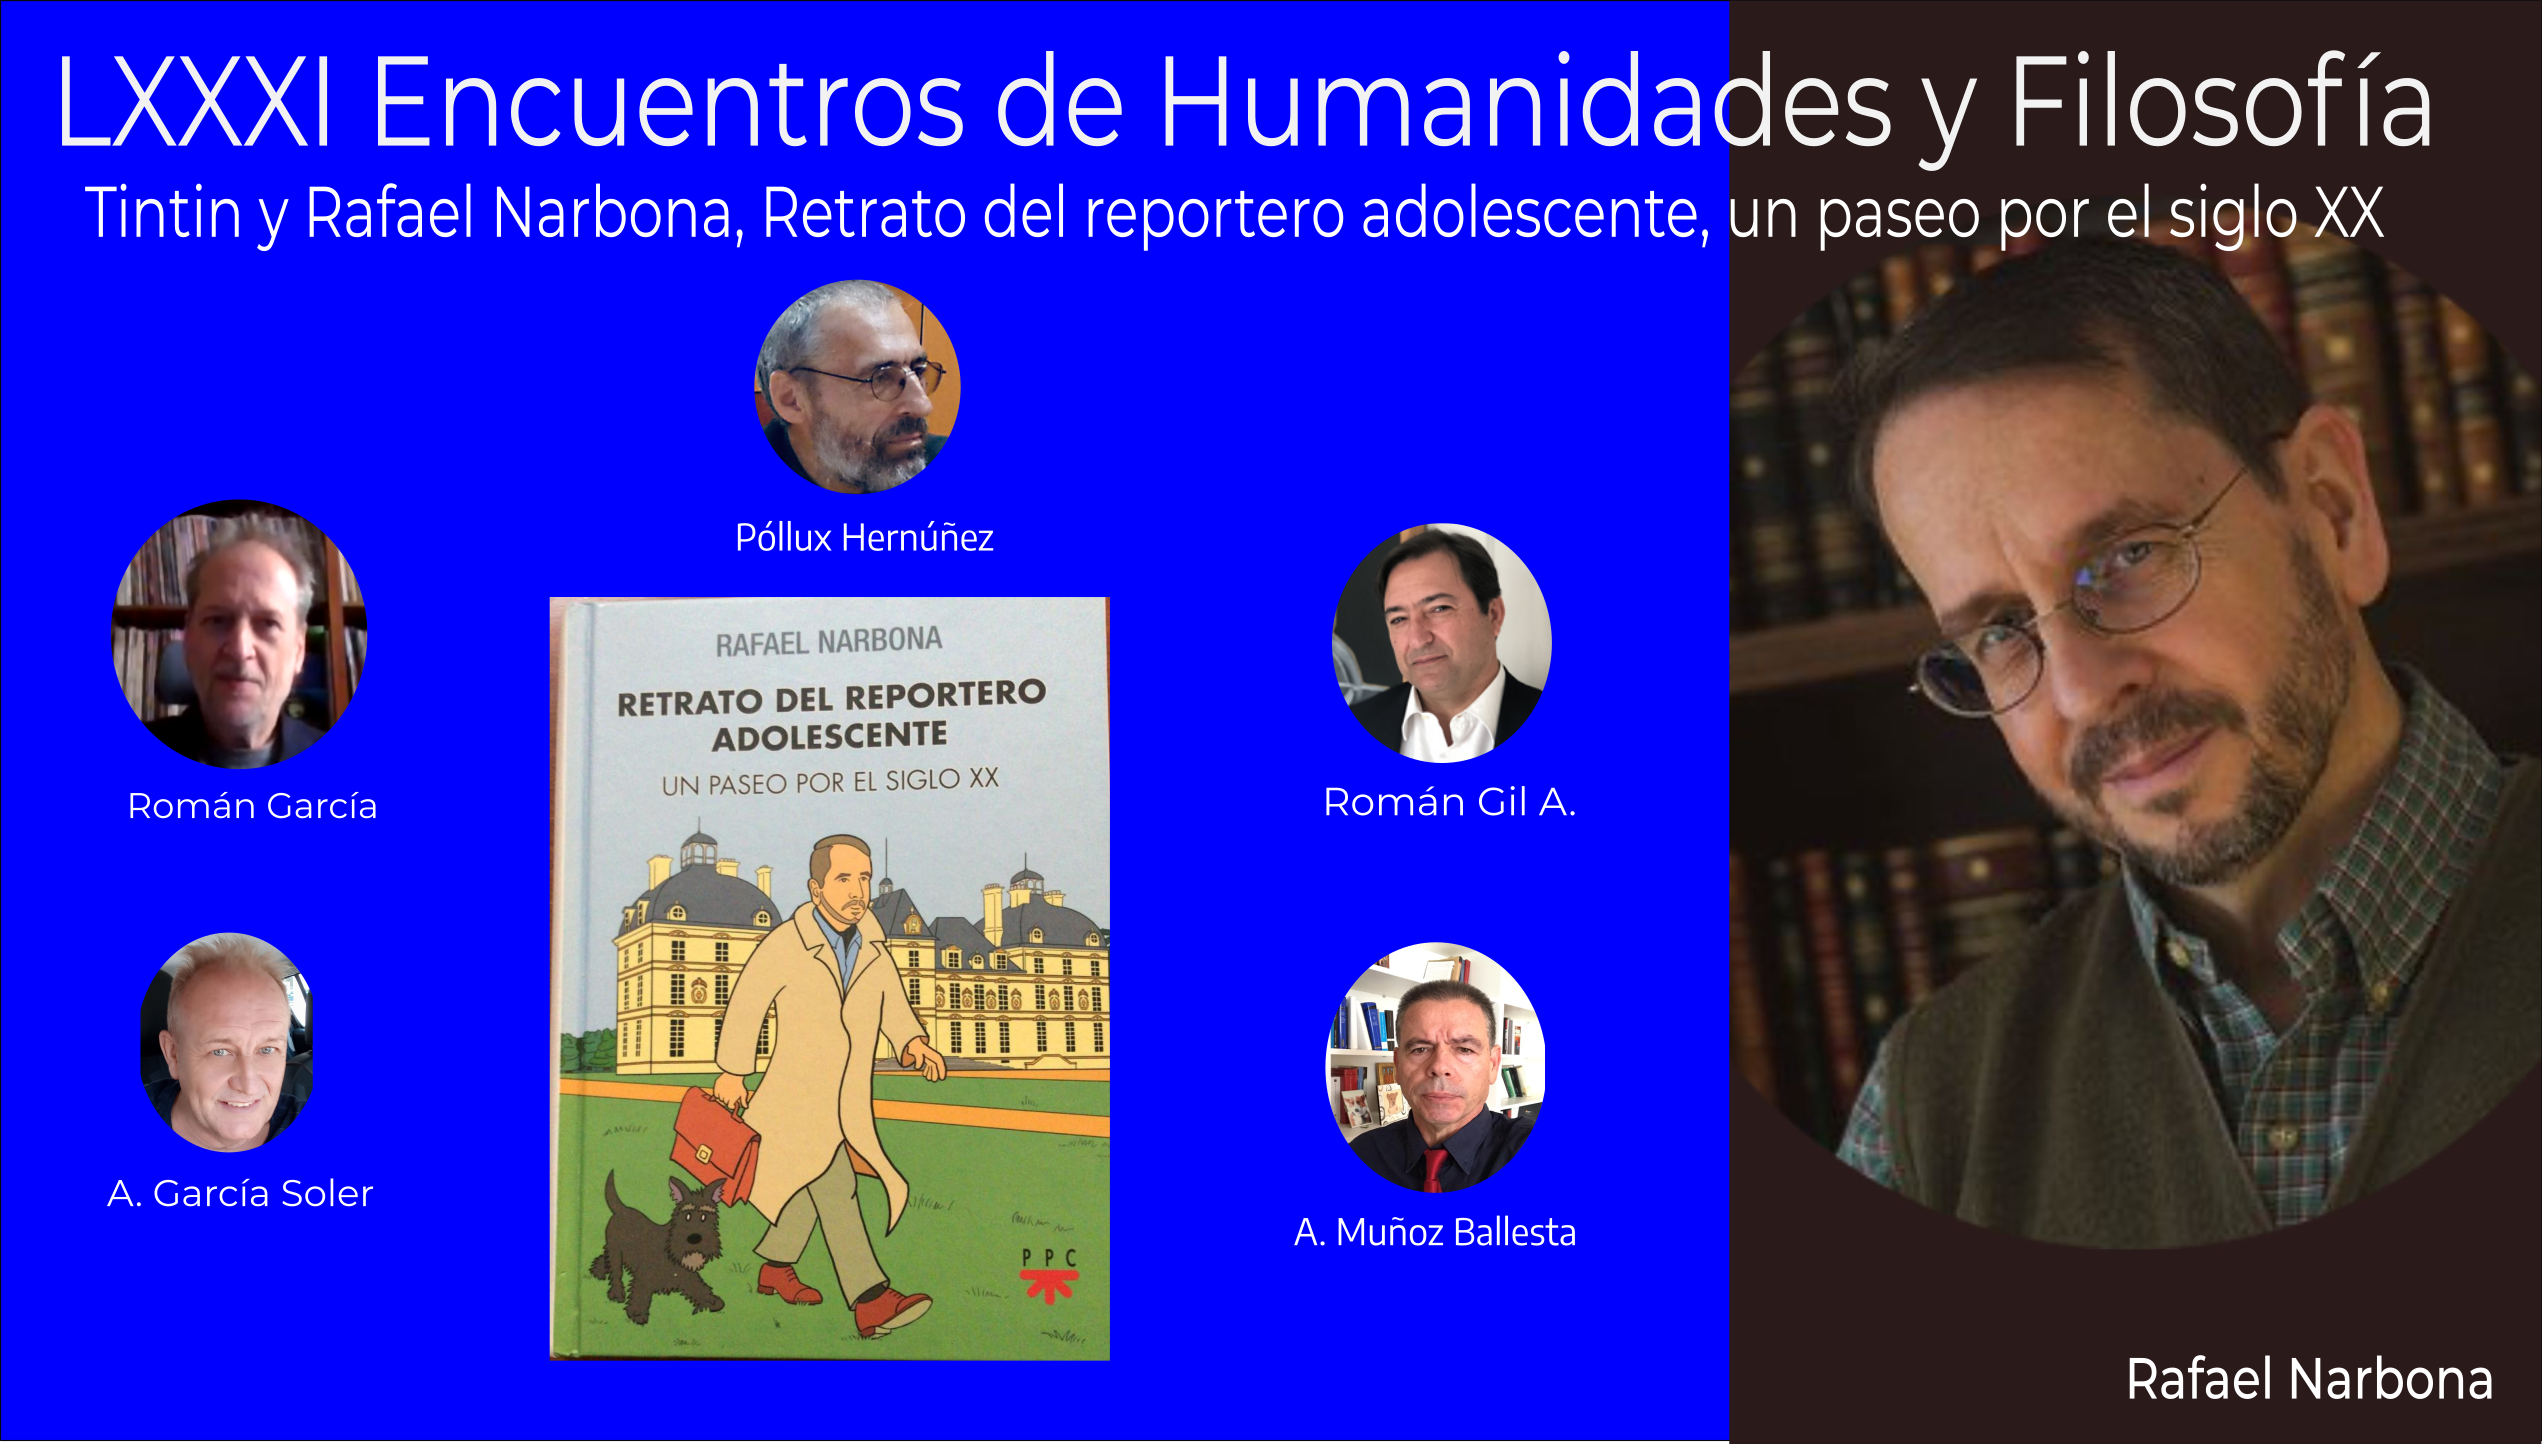 LXXXI Encuentros Humanidades y Filosofía, Tintin y Rafael Narbona, Retrato del reportero adolescente, un paseo por el siglo XX